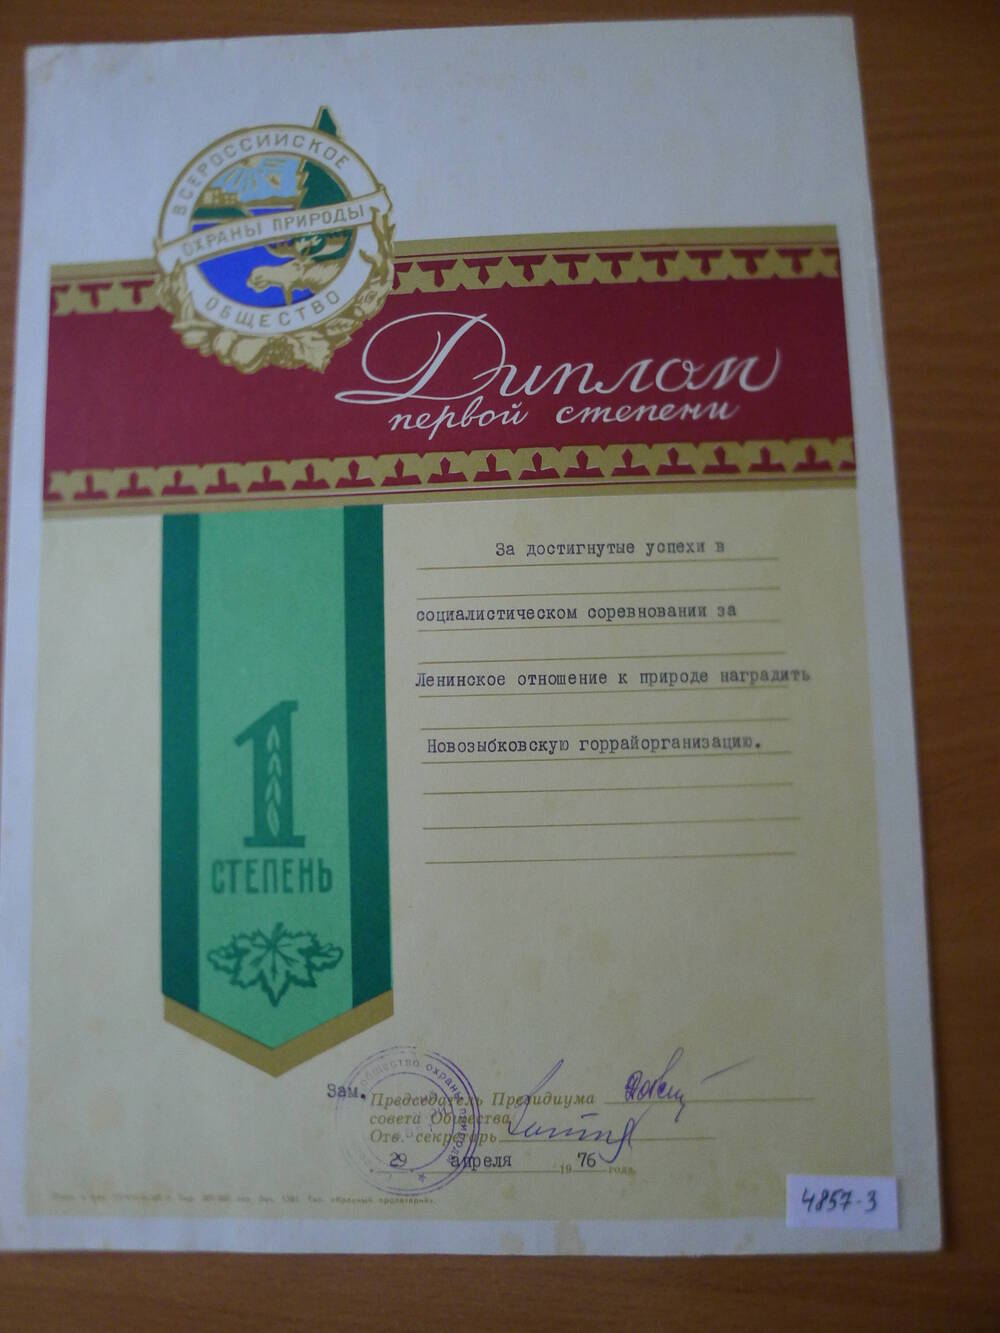 Диплом 1 степени Новозыбковской горрайорганизации за достигнутые успехи в социалистическом соревновании за Ленинское отношение к природе. 1976